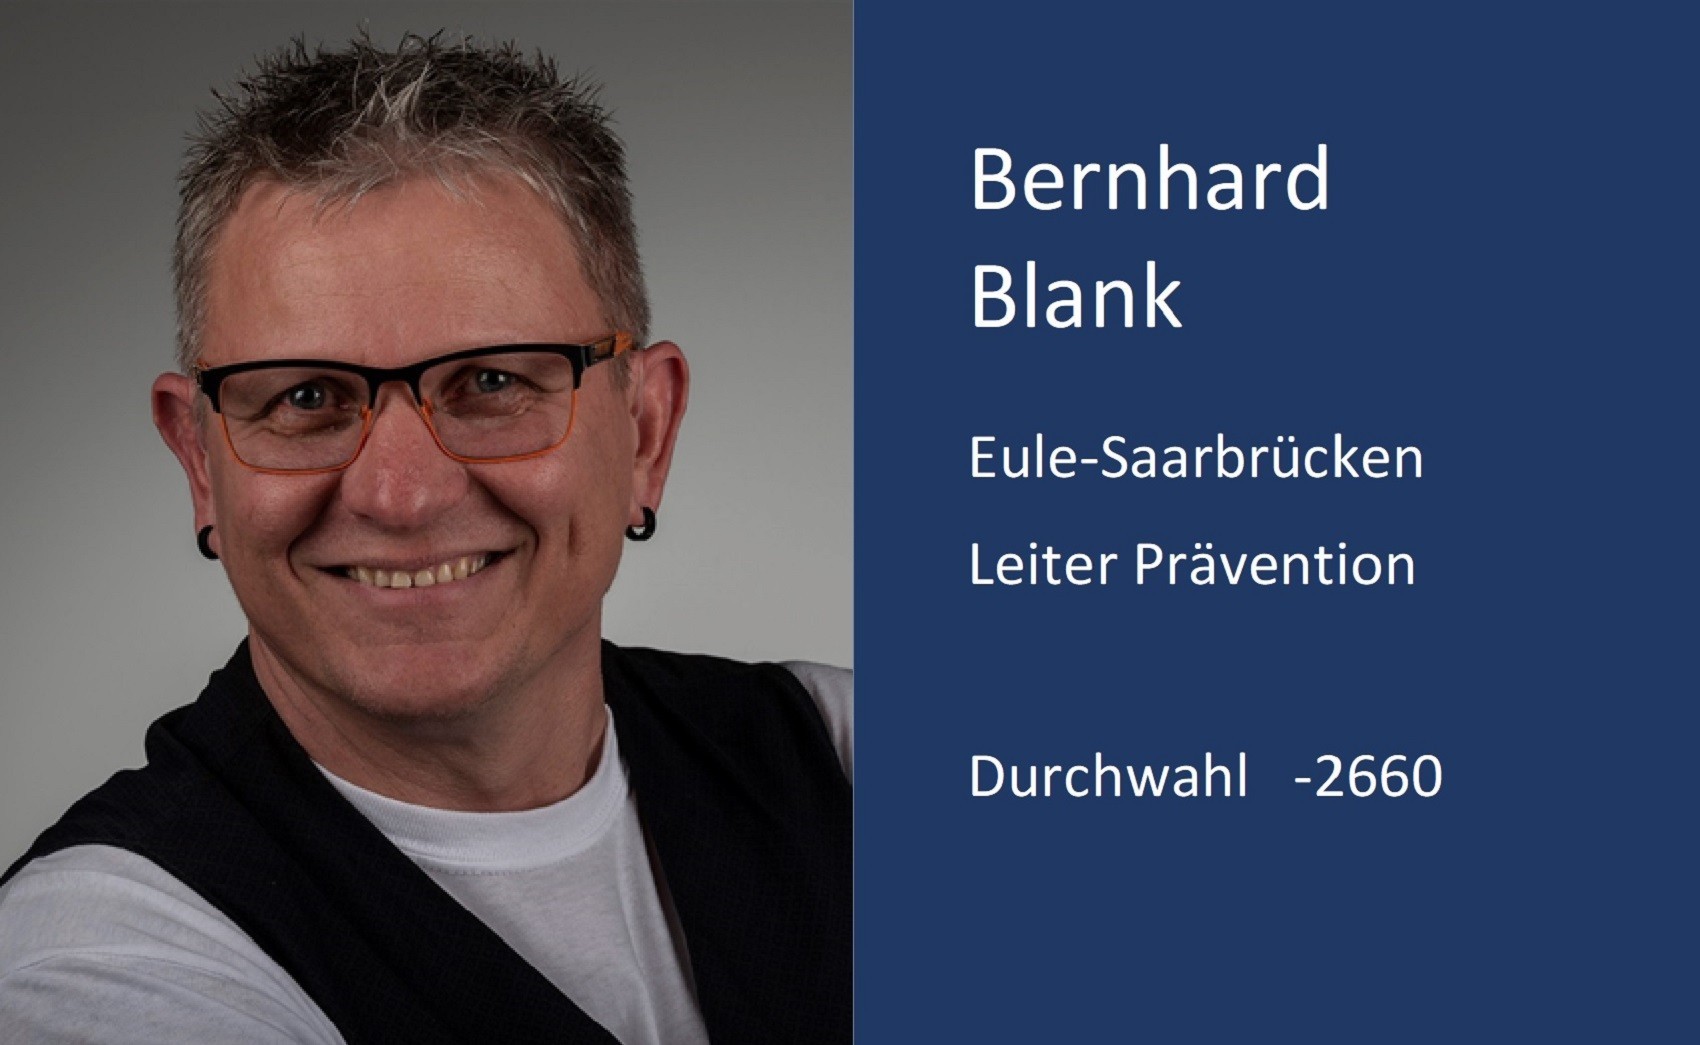 Bernhard Blank, Kontaktdaten, Durchwahl, 2 6 6 0, Email, b.blank ät m x.uni minus saarland.d e 